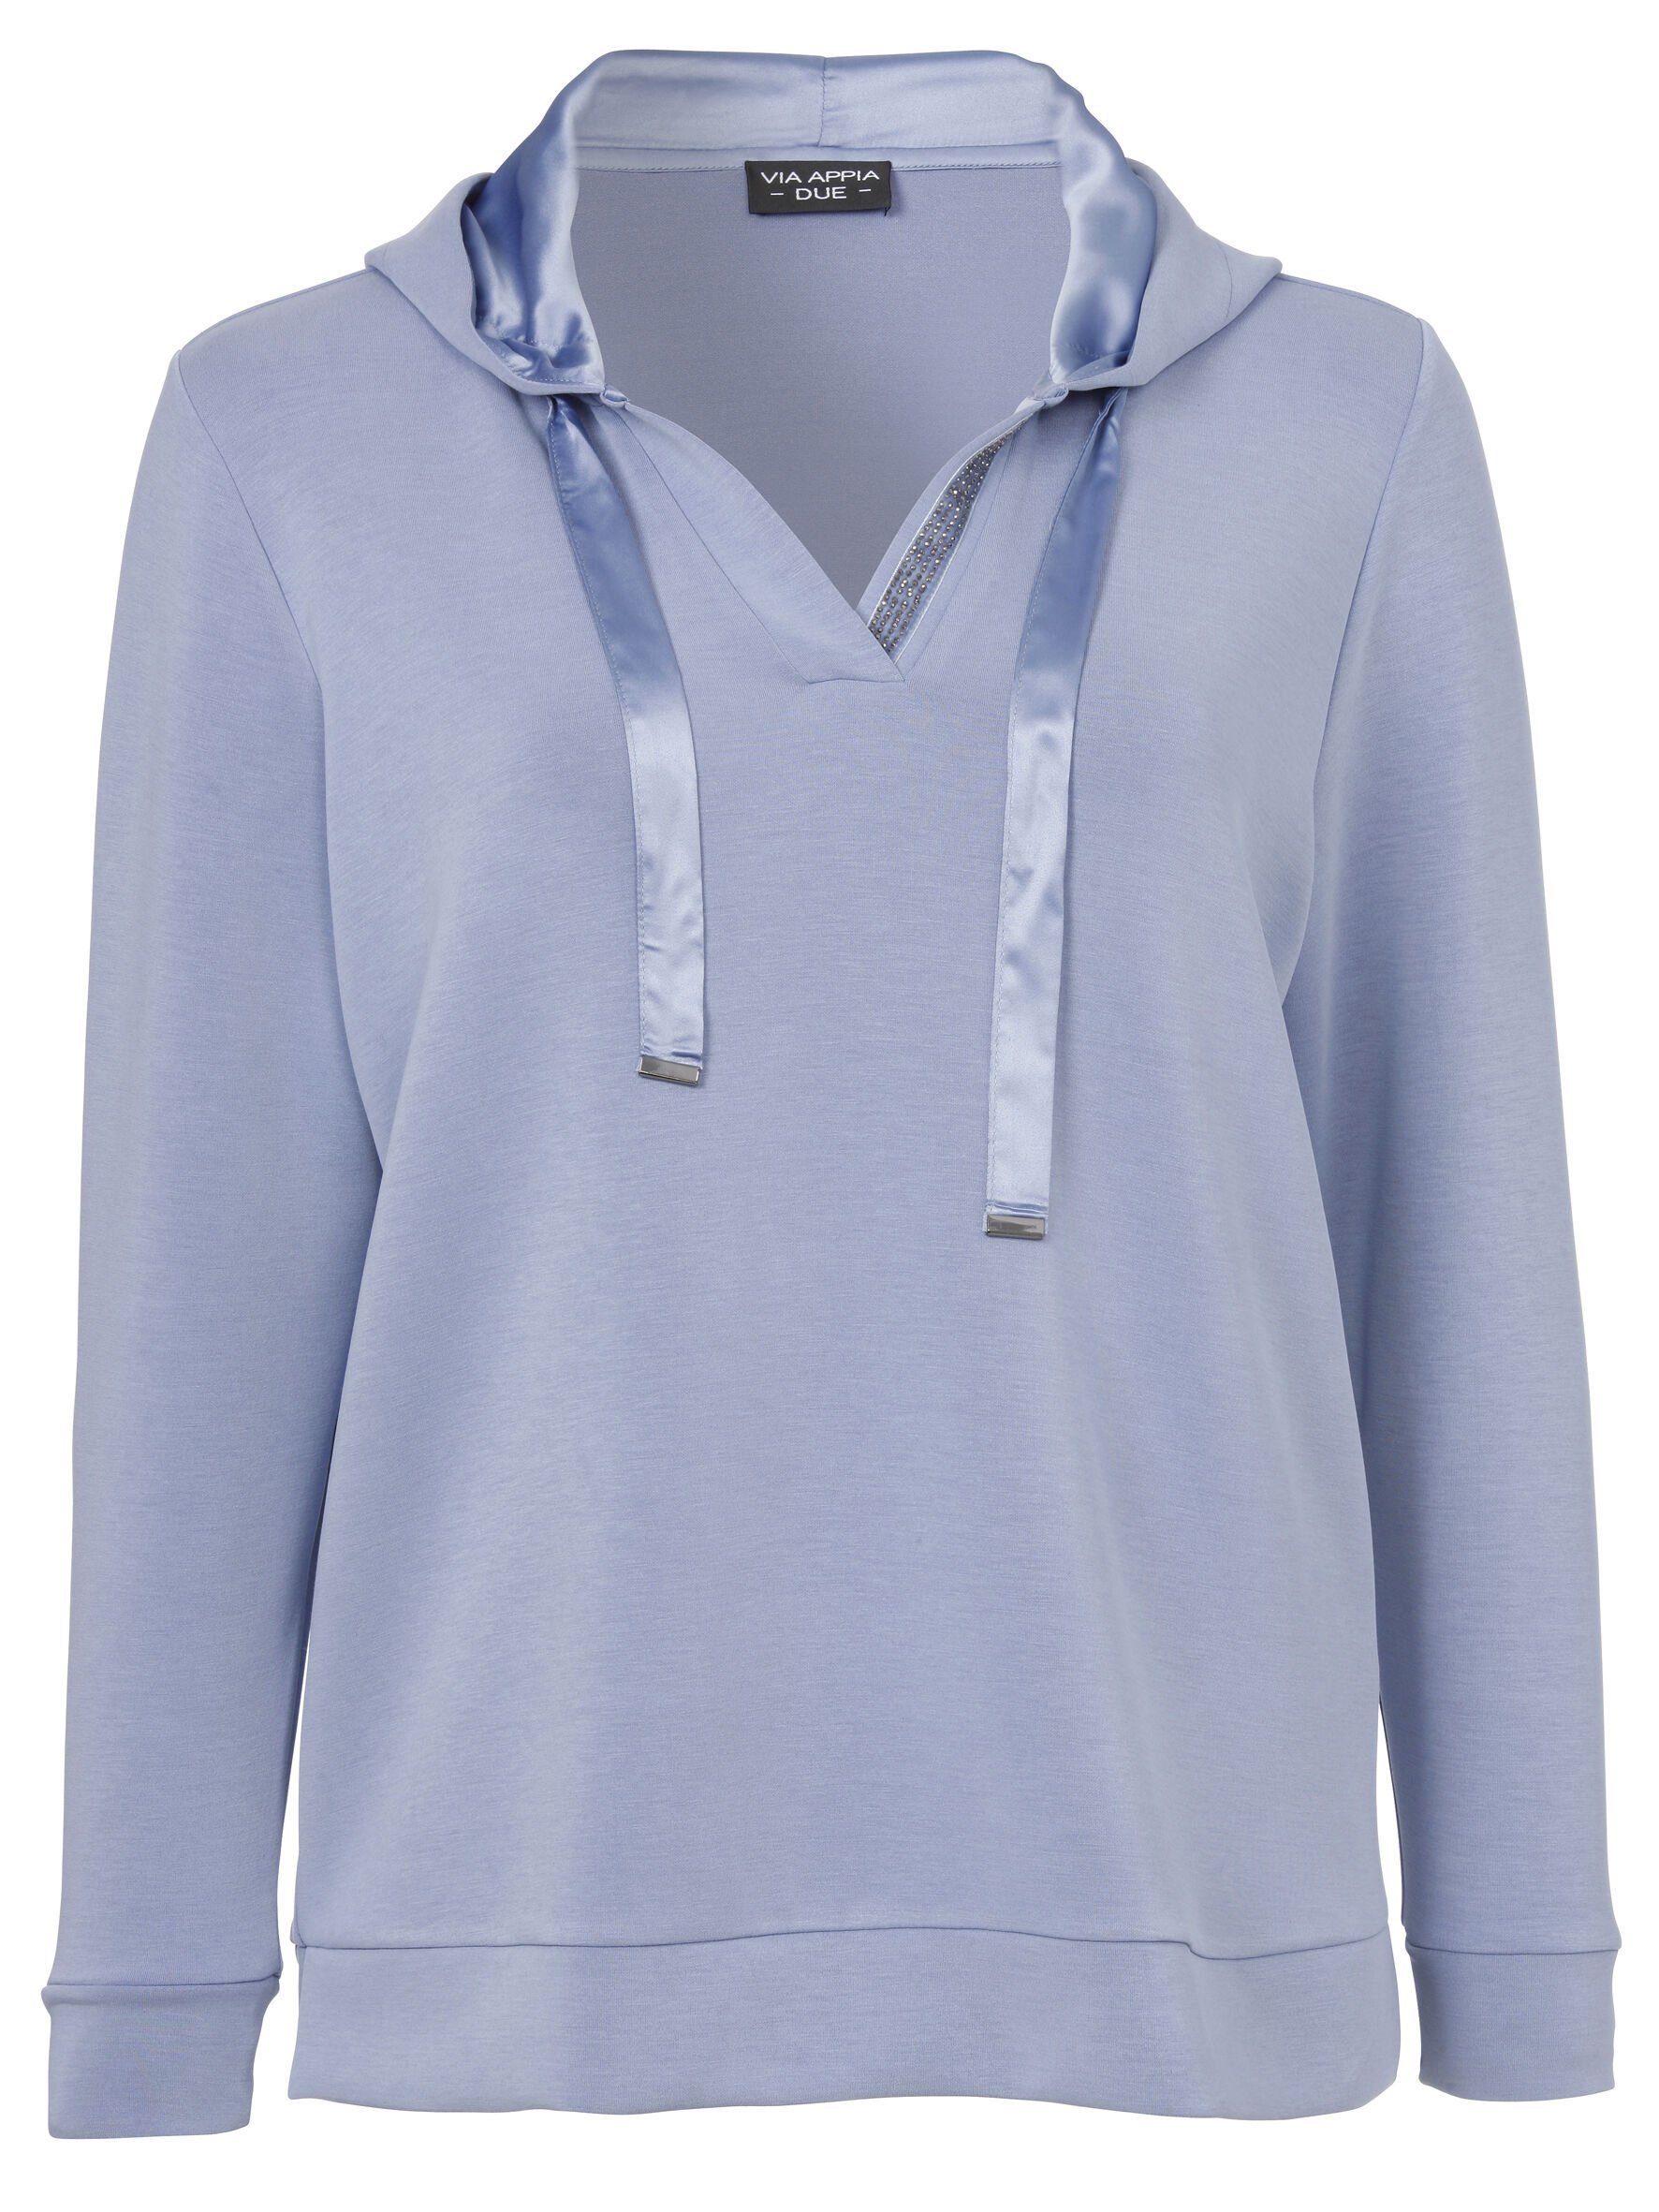 Sweatshirt unifarbenem VIA Sweatshirt DUE in Viskosemischung APPIA Sportives mit hochwertigen rauchblau Stil